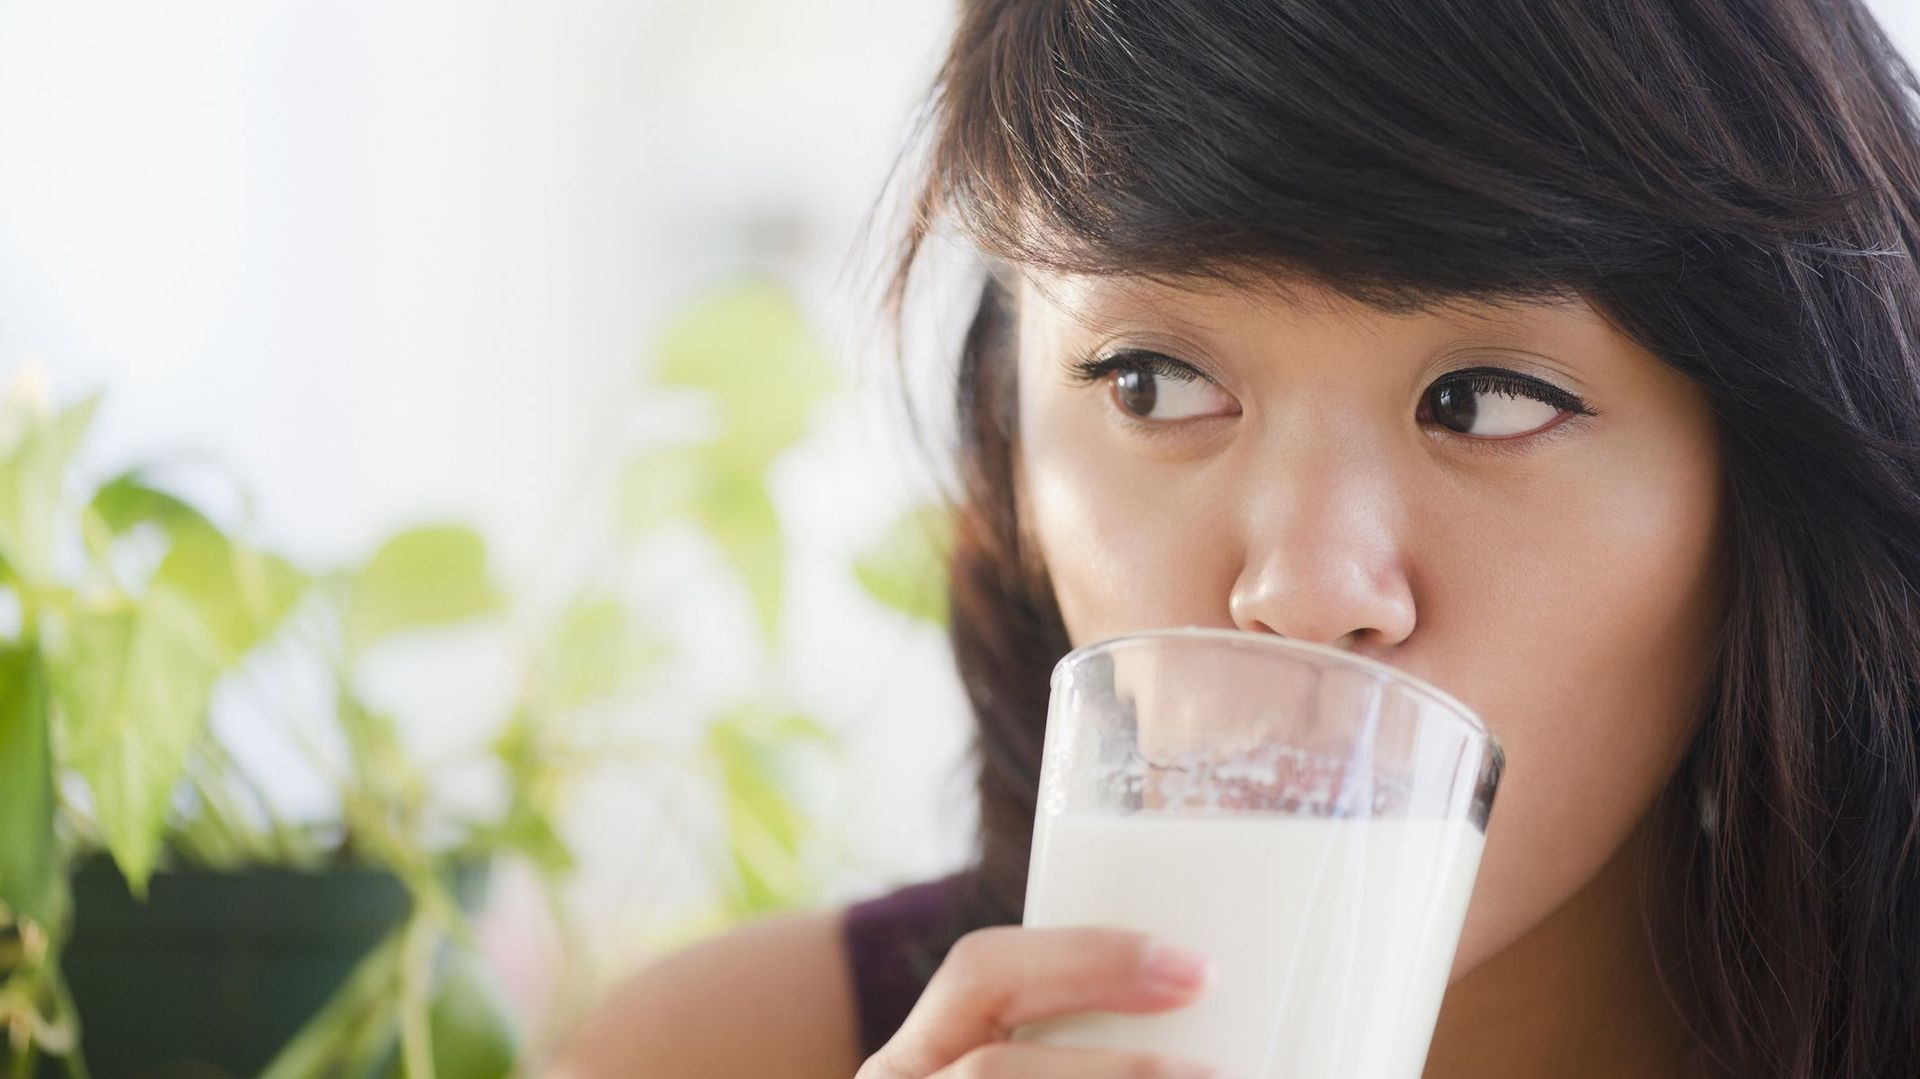 Boire du lait de vache augmenterait le risque de cancer du sein.